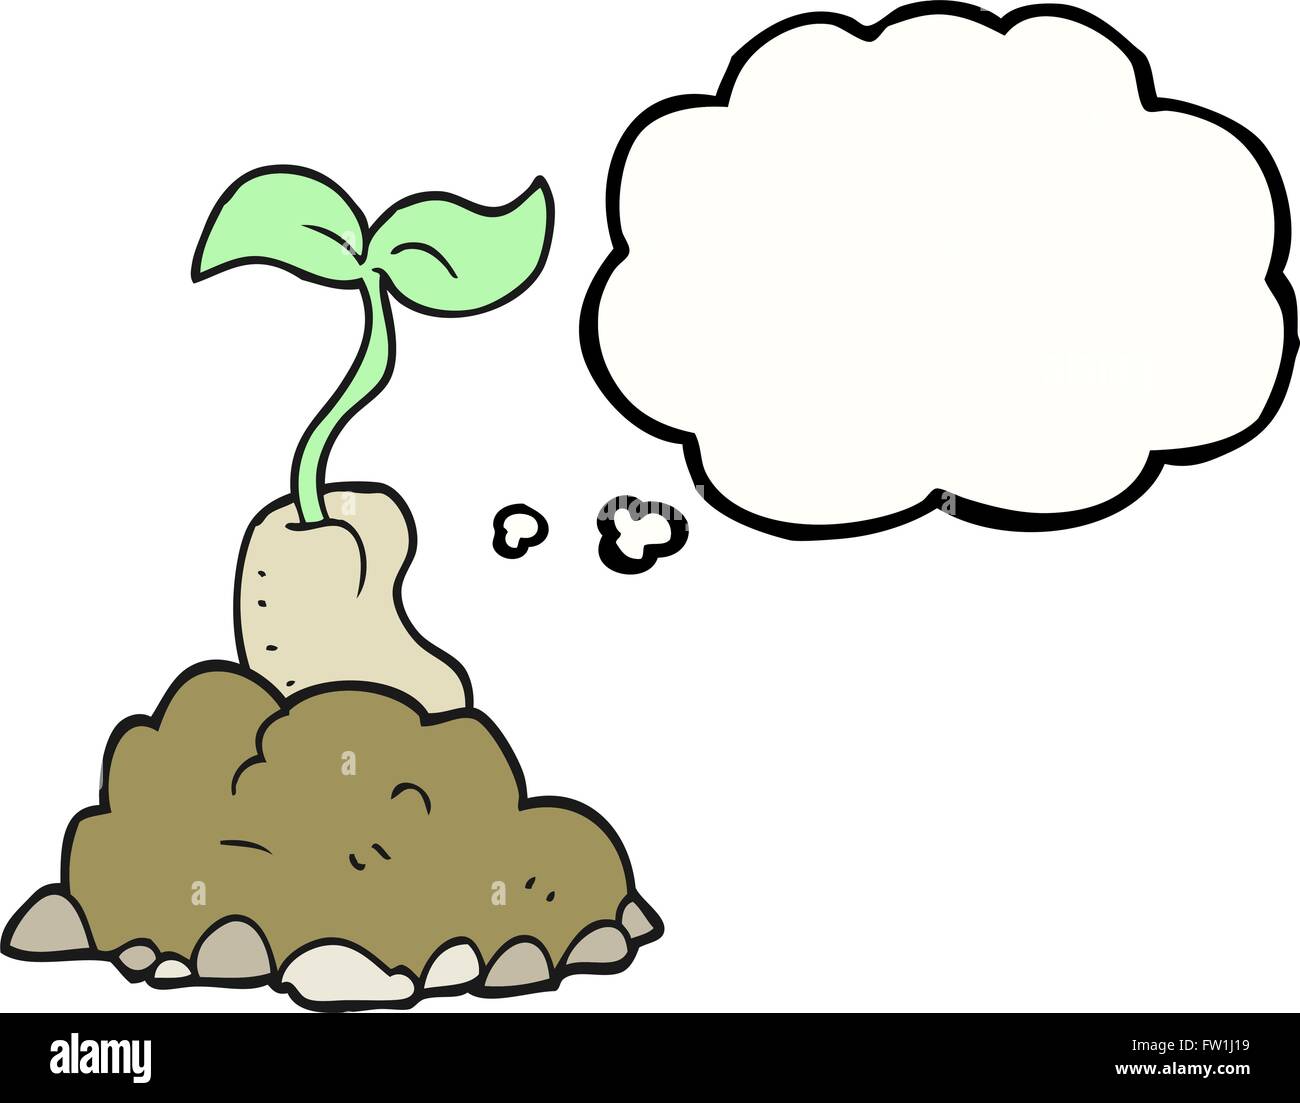 Freihändig gezeichnete Gedankenblase cartoon sprießende Samen Stock Vektor